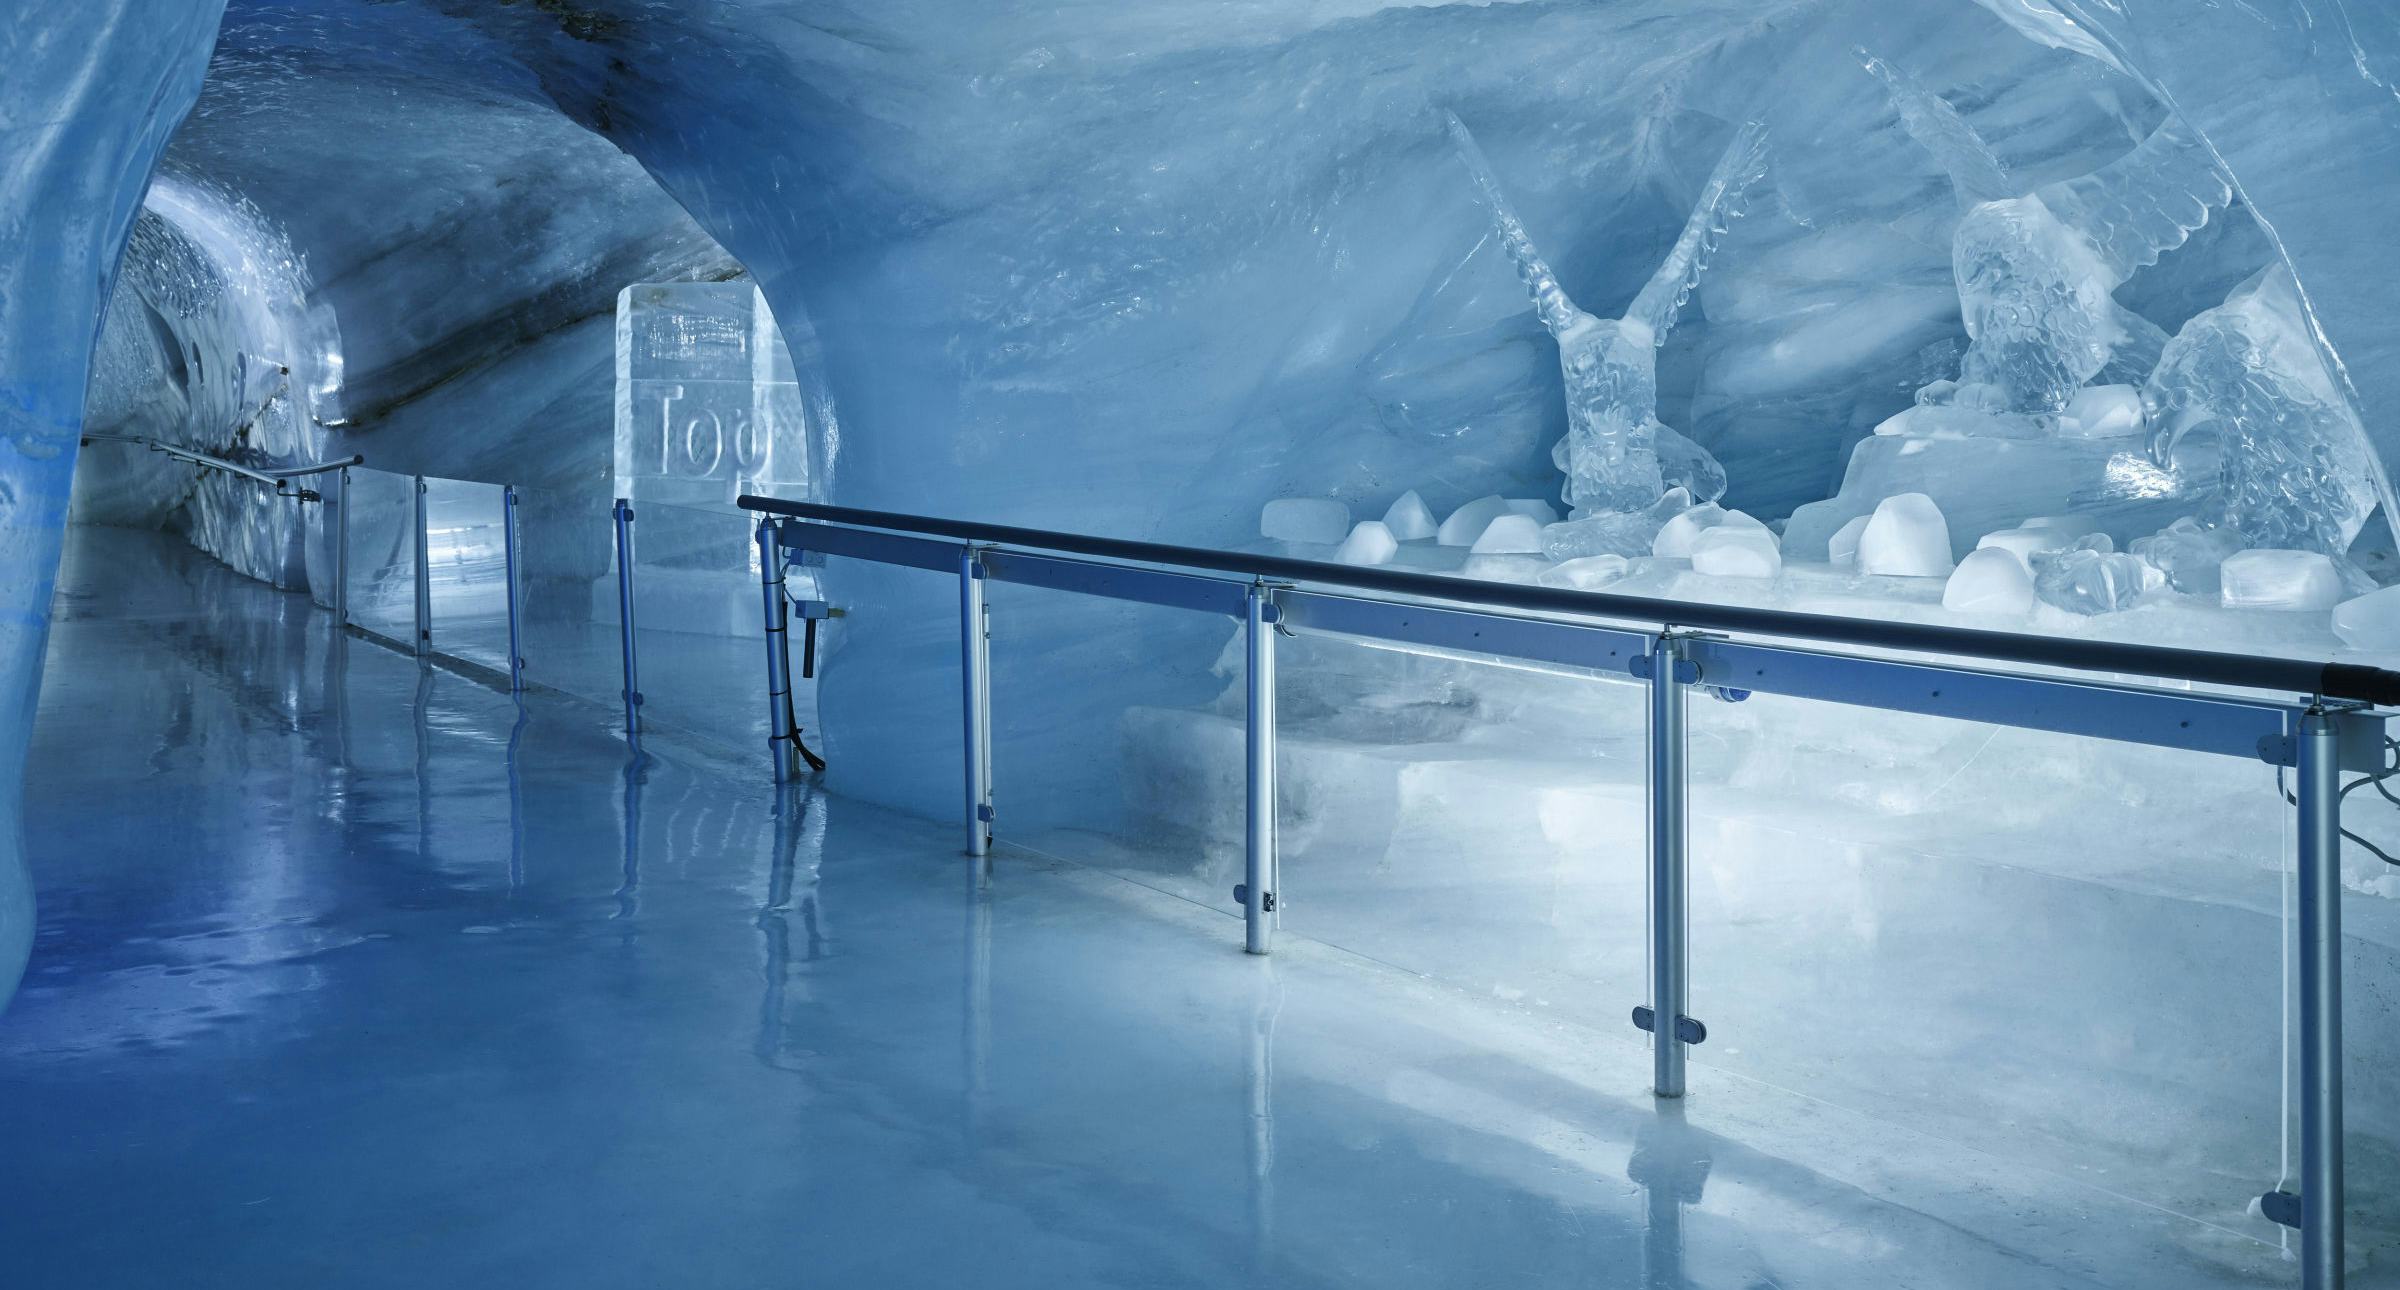 Eispalastjungfraujoch breitformat orig